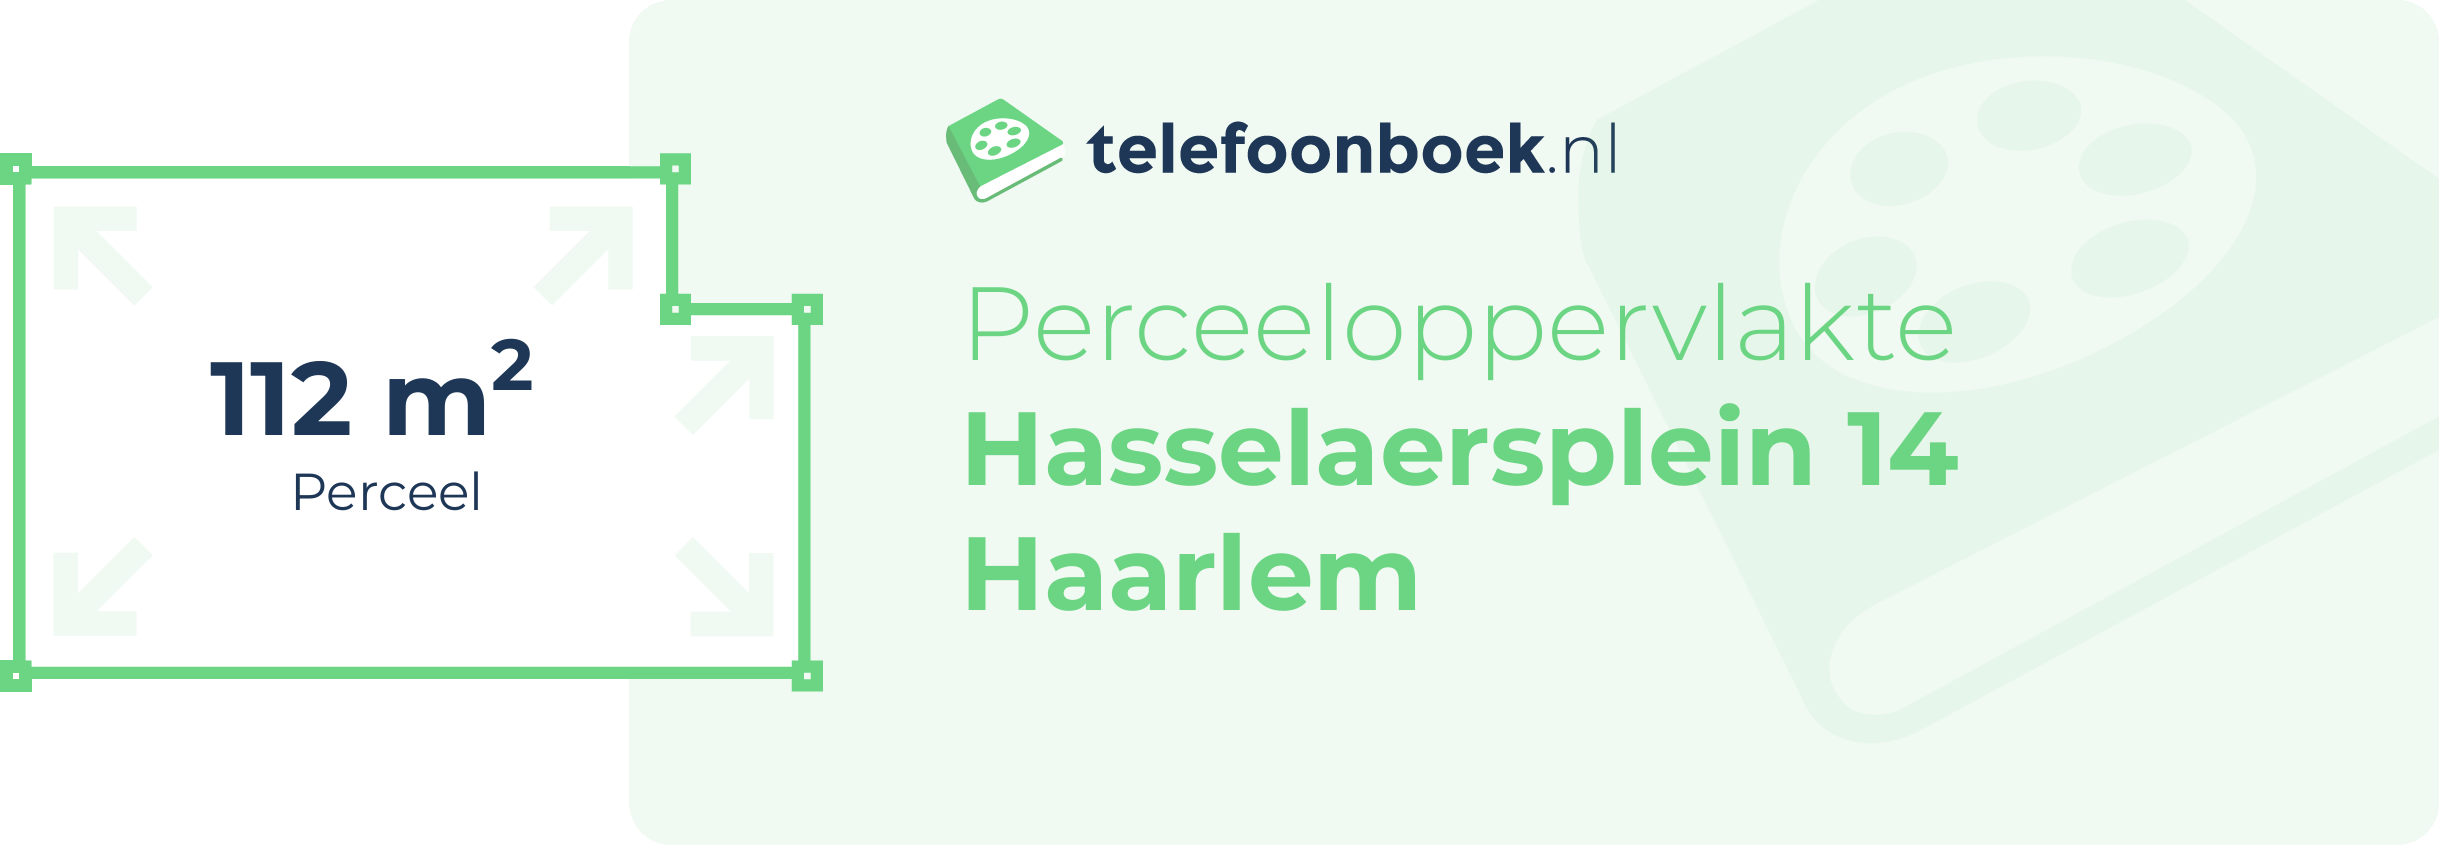 Perceeloppervlakte Hasselaersplein 14 Haarlem